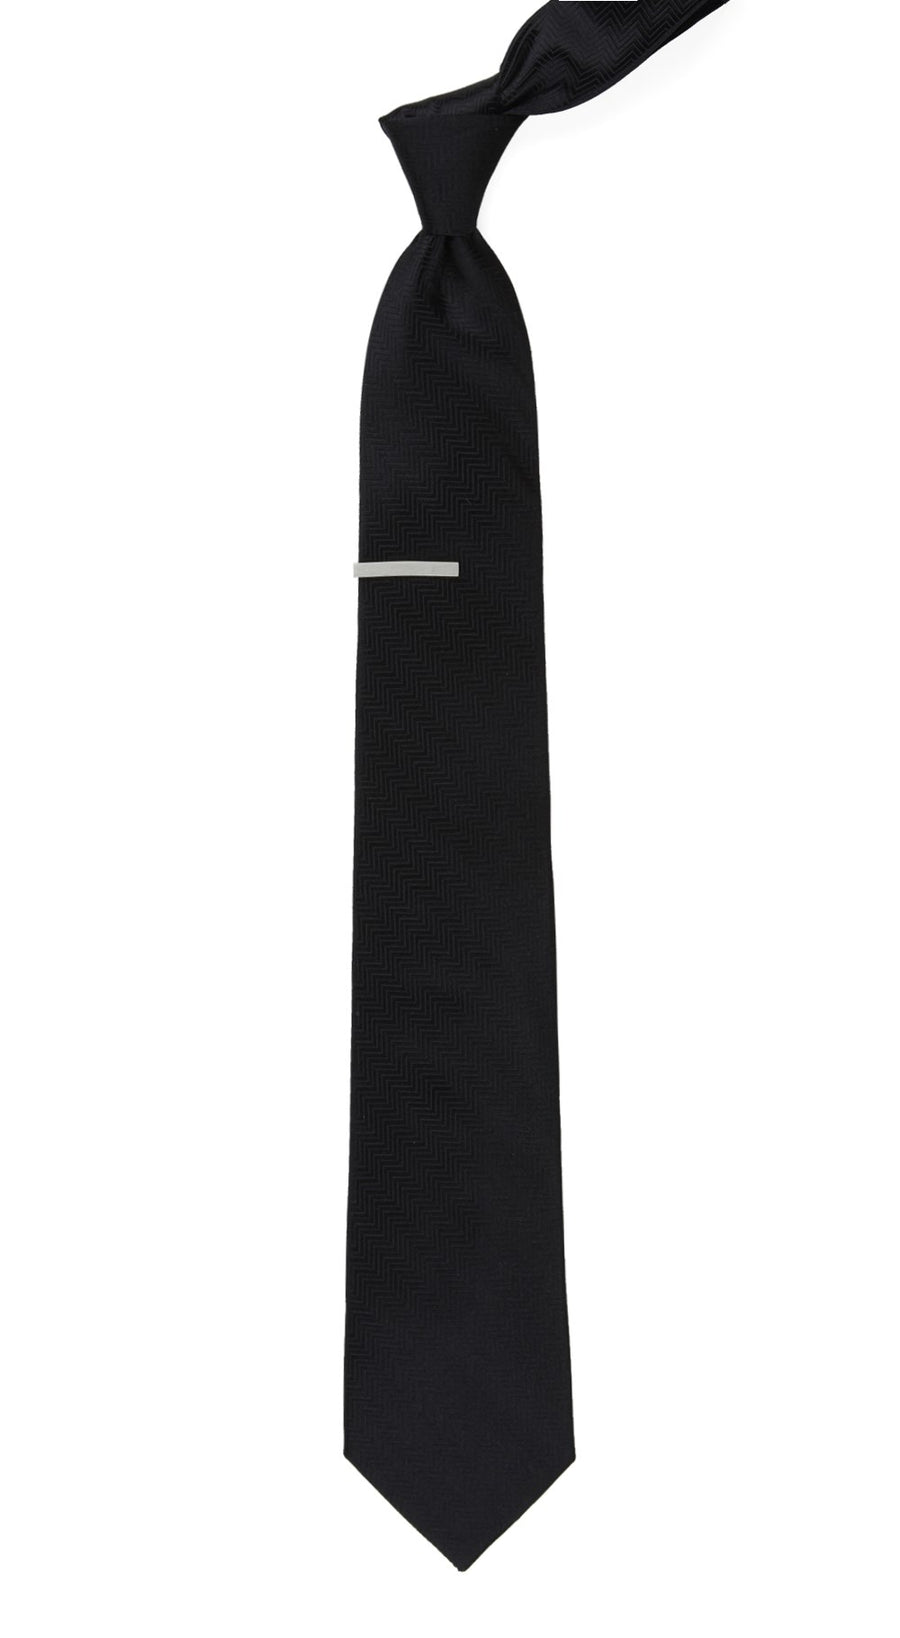 Herringbone Black Tie | Silk Ties | Tie Bar